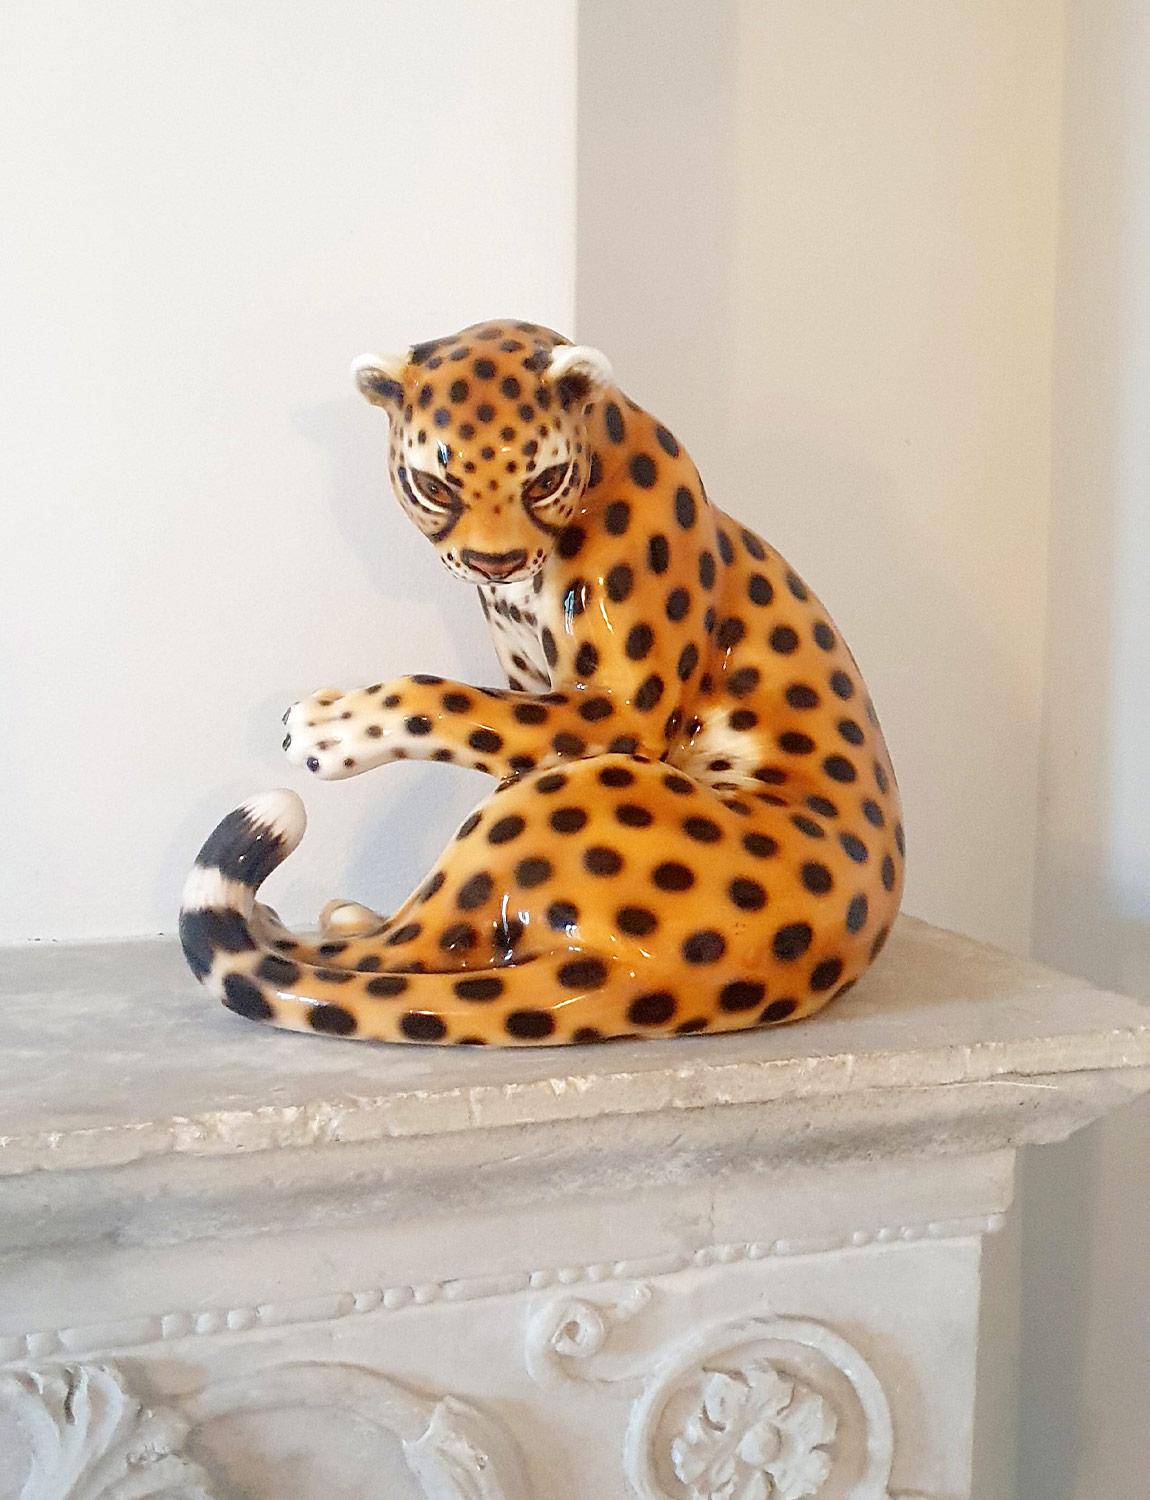 Ein schöner (und kitschiger) Keramik-Leopard aus den 1970er Jahren, gefunden in einem Privathaus in Narni, Umbrien. Ein aufmerksamer Besitzer hat dieses hübsche Stück sorgfältig erhalten. Keramische Wildtiere und Hunde waren in den 1960er und 70er